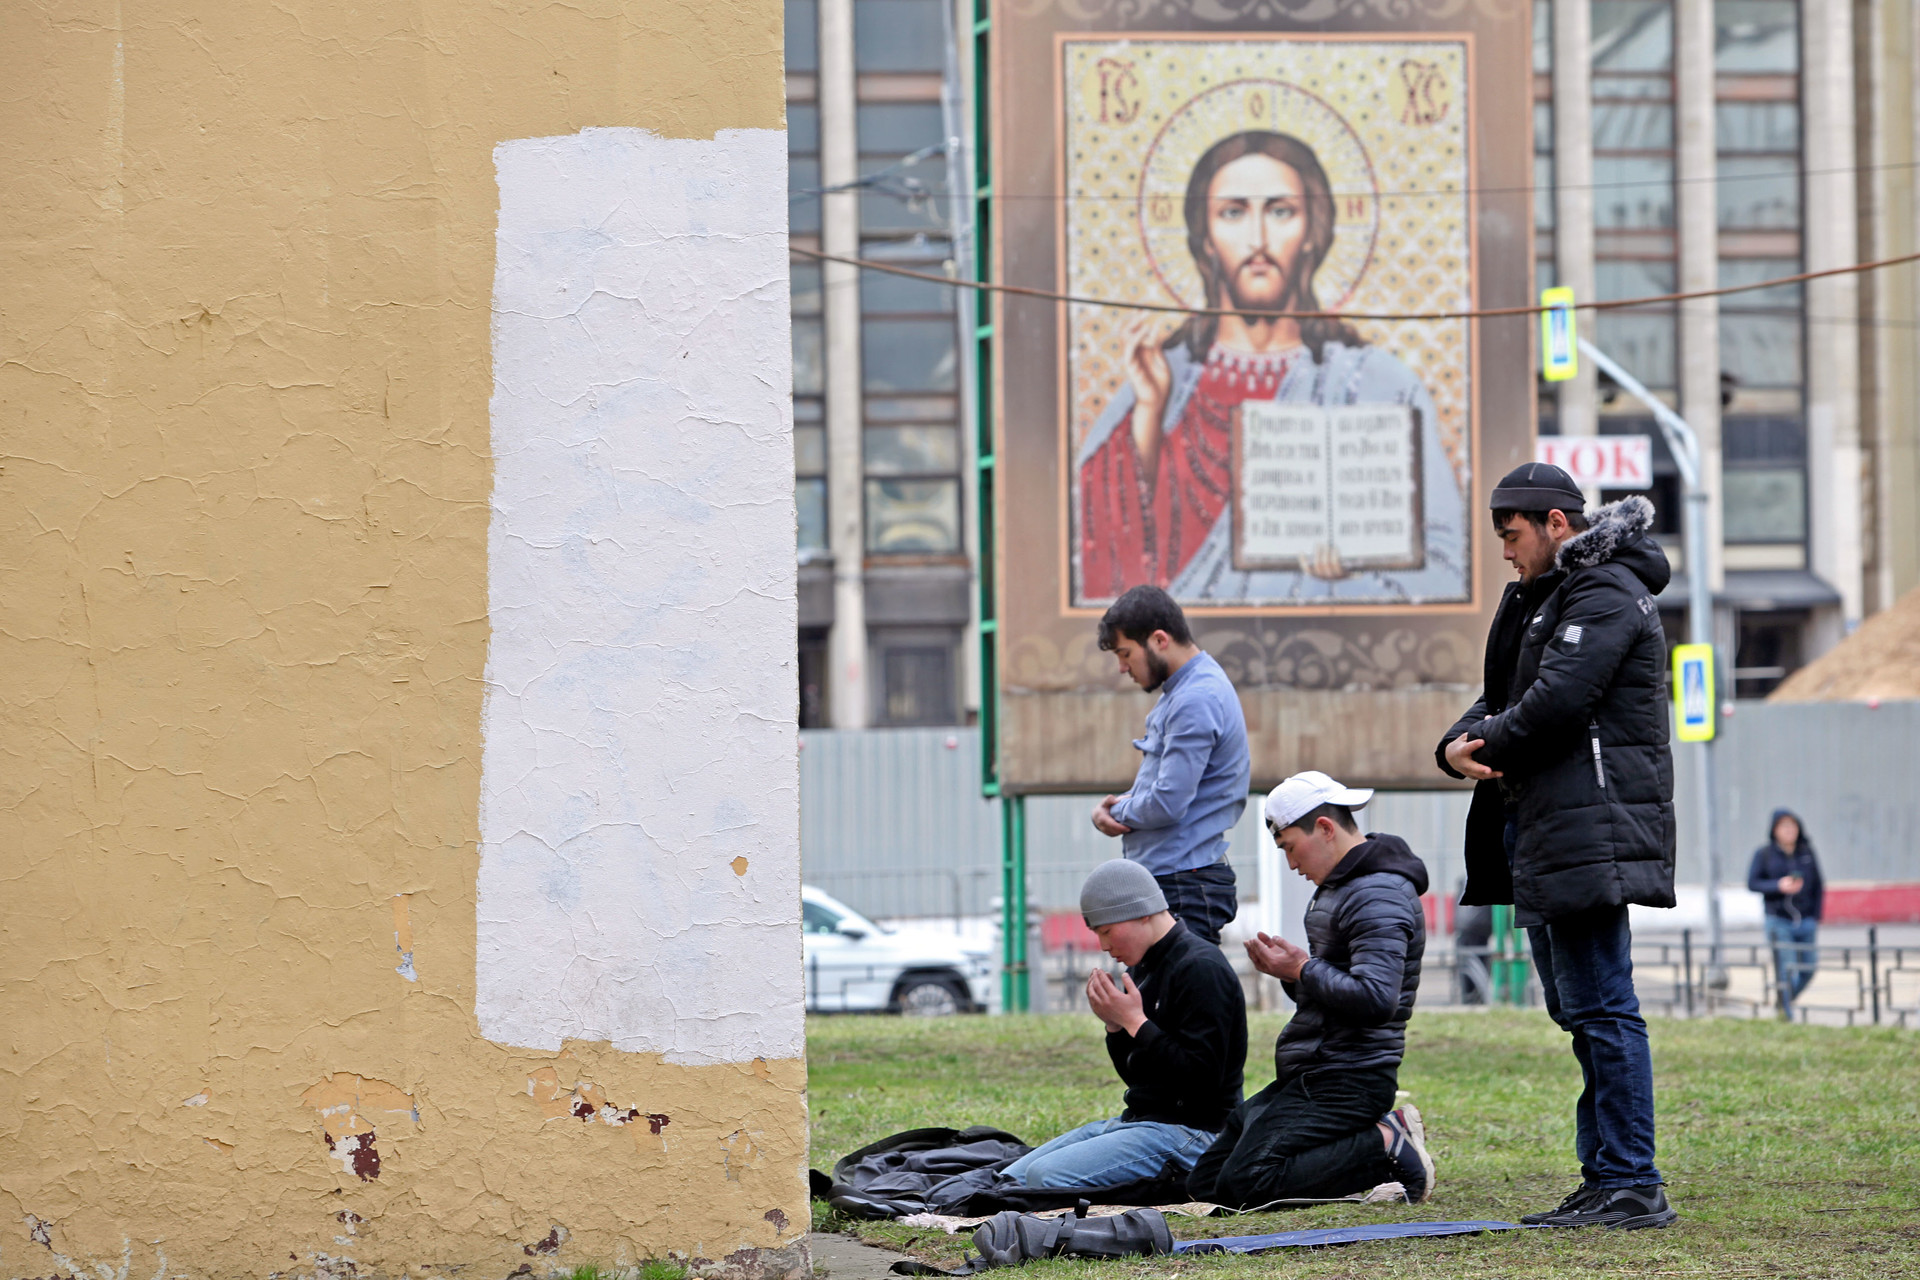 Umat Islam menunaikan salat Zuhur di taman, di depan gereja Ortodoks, tak jauh dari Masjid Agung Moskow, Jumat (20/3).